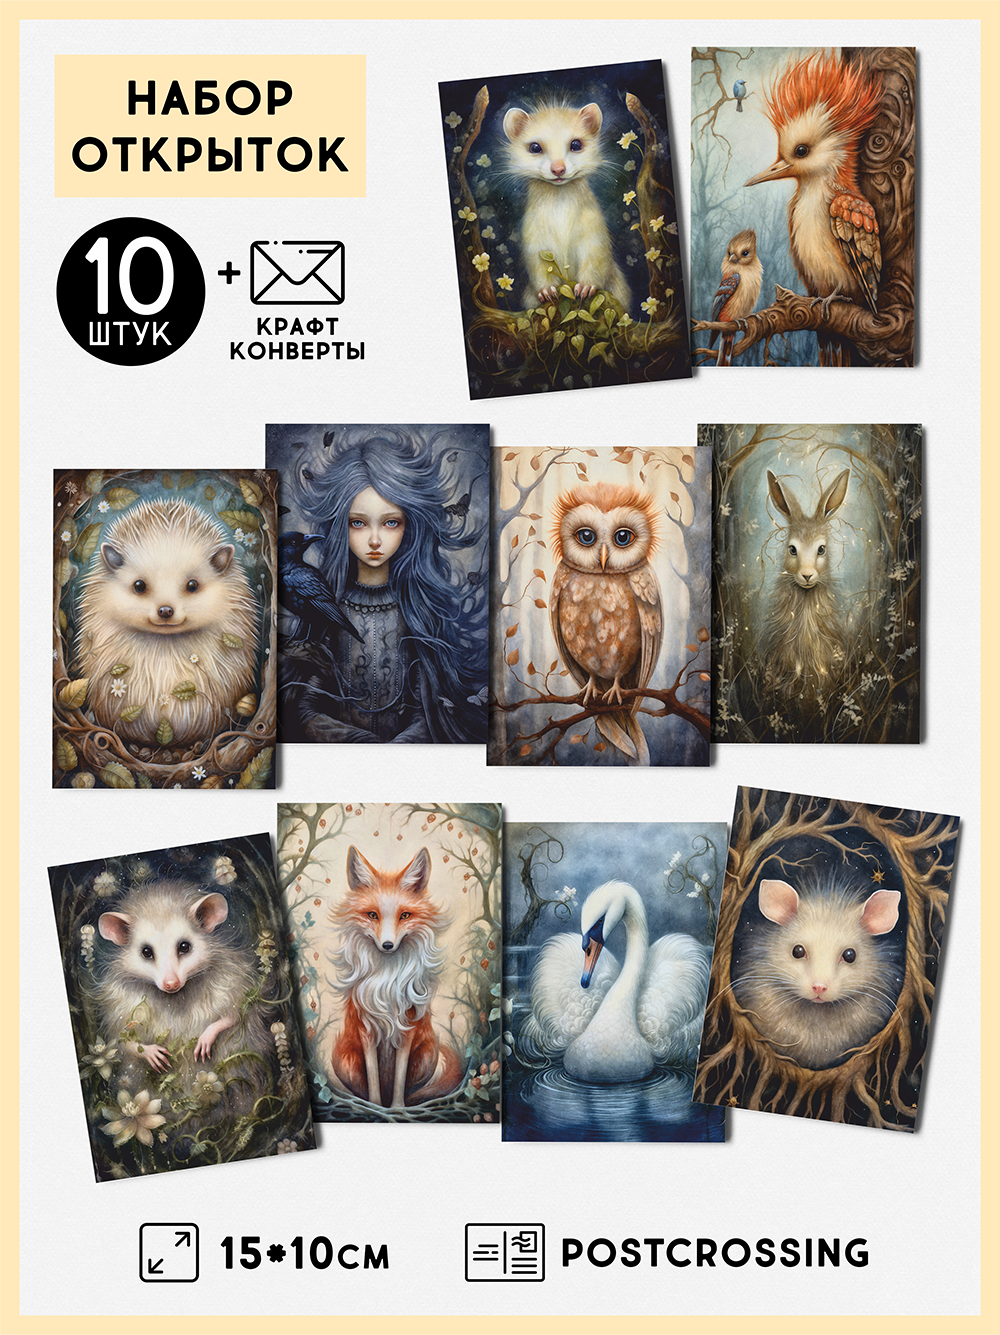 Набор открыток "Волшебный лес" с крафт конвертами, 10 штук, размер А6